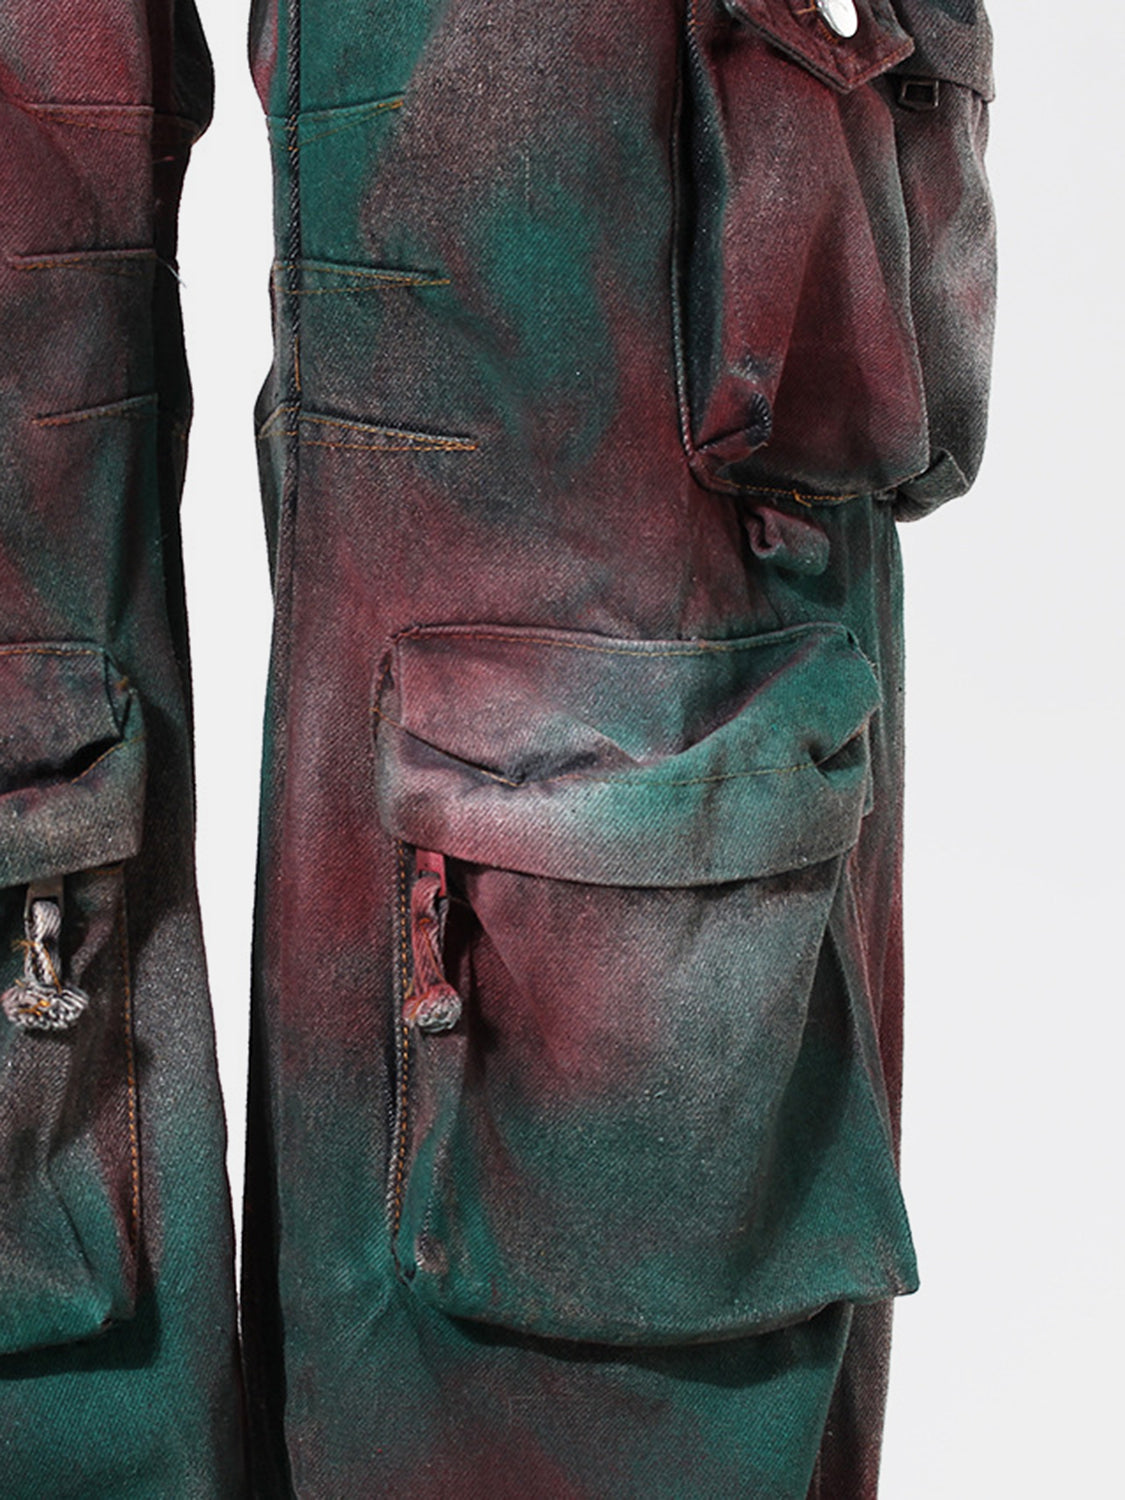 TEEK - Red GreenSpray-Painted Wide Leg Cargo Jeans JEANS TEEK Trend   